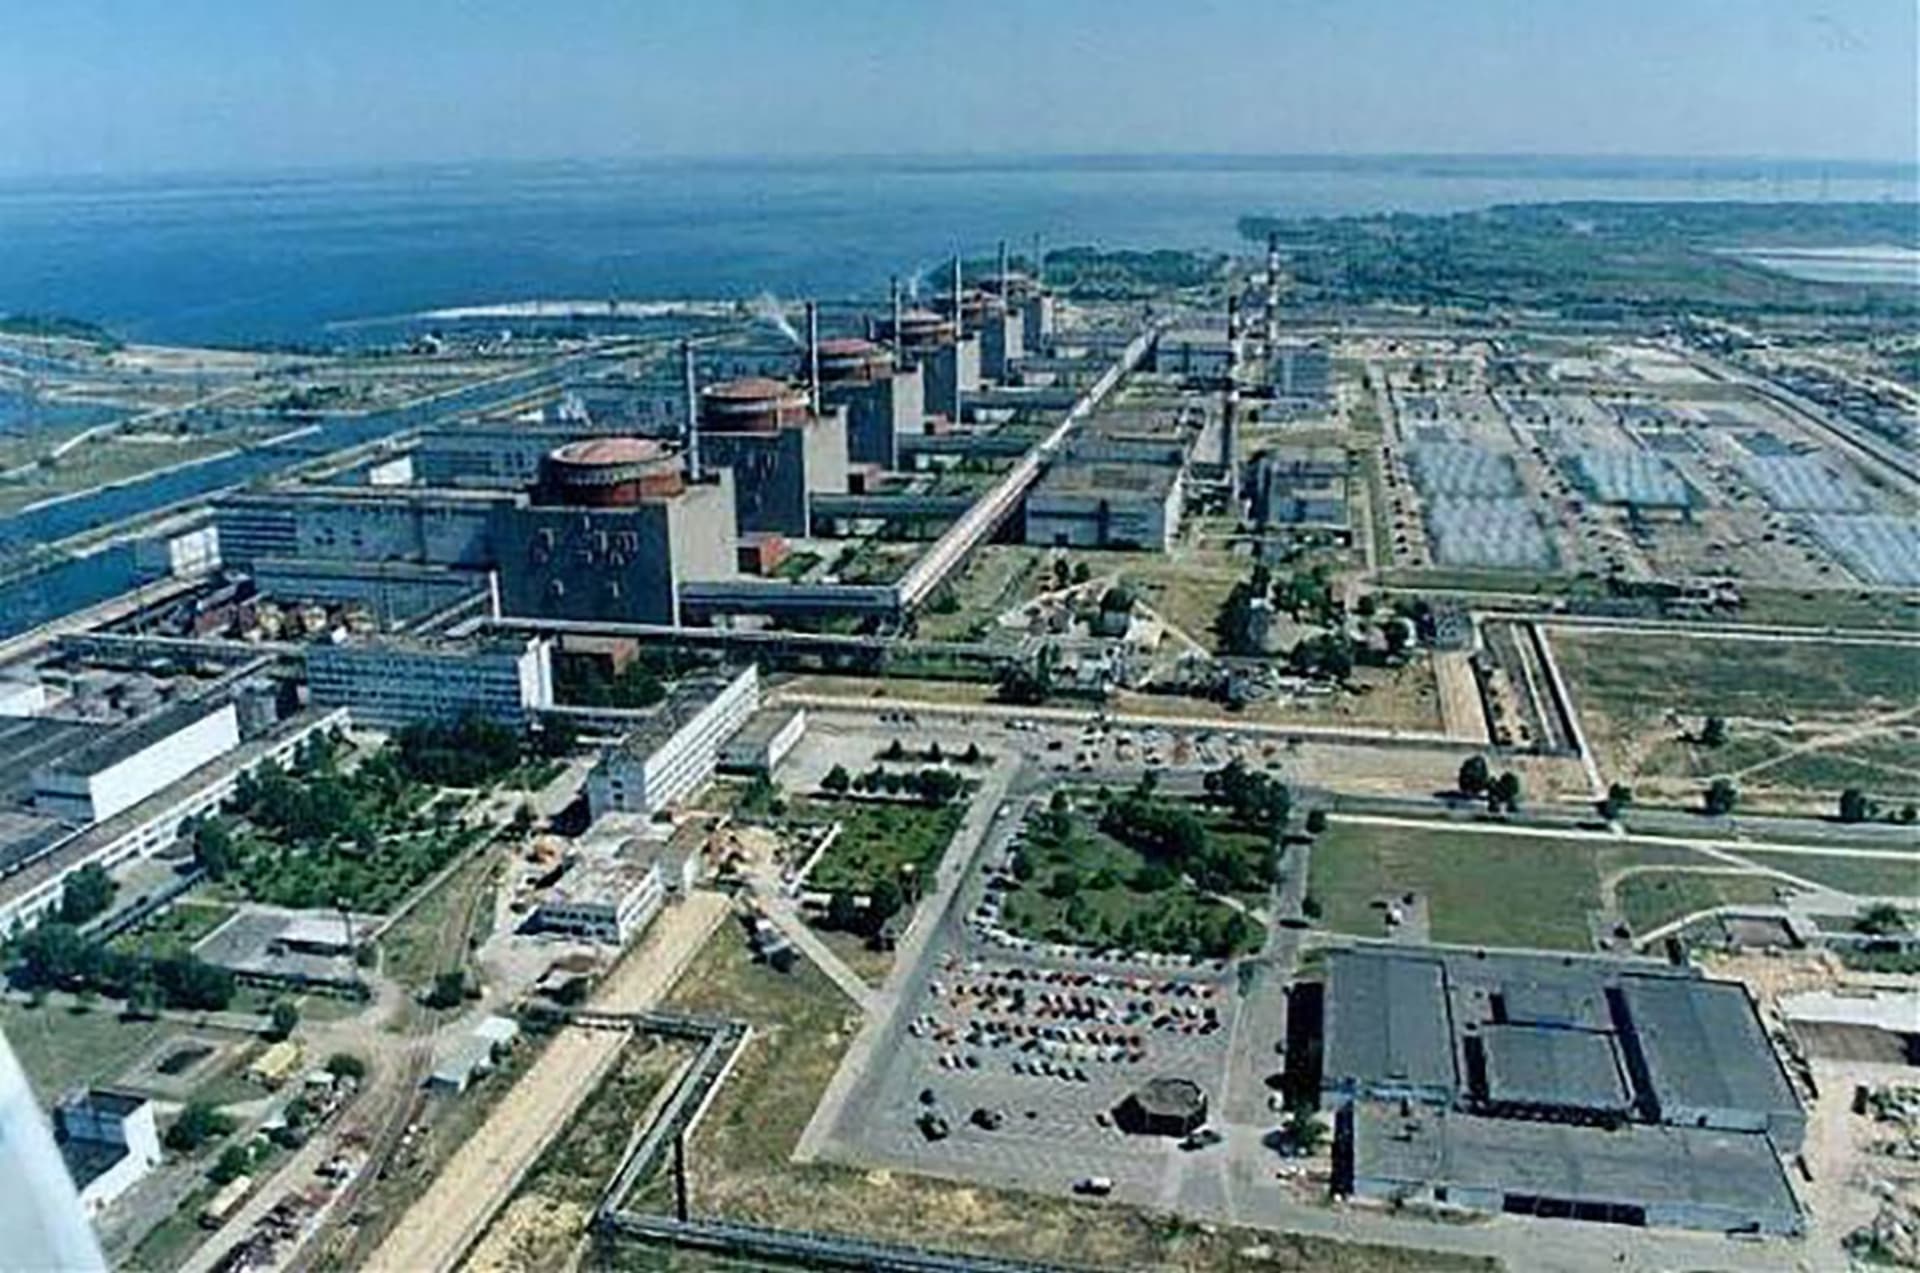 Záporožská jaderná elektrárna je největší svého druhu v Evropě.